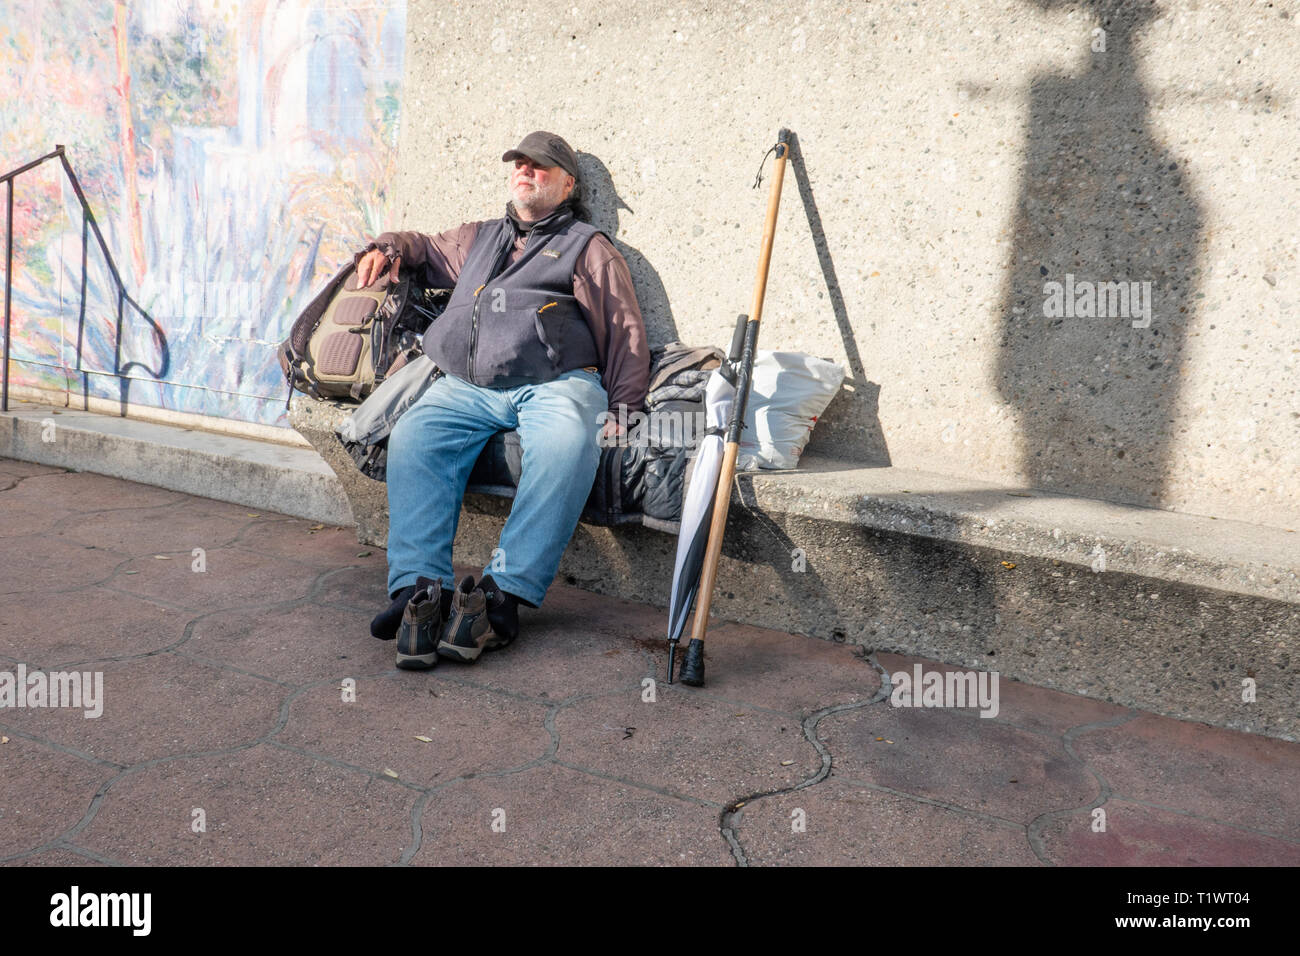 Ein obdachloser Mann sitzt mit seinen Schuhen weg auf eine Stadt konkrete Bank mit seinen Spazierstock, Regenschirm und Rucksack neben ihm auf der State Street in Santa Ba Stockfoto